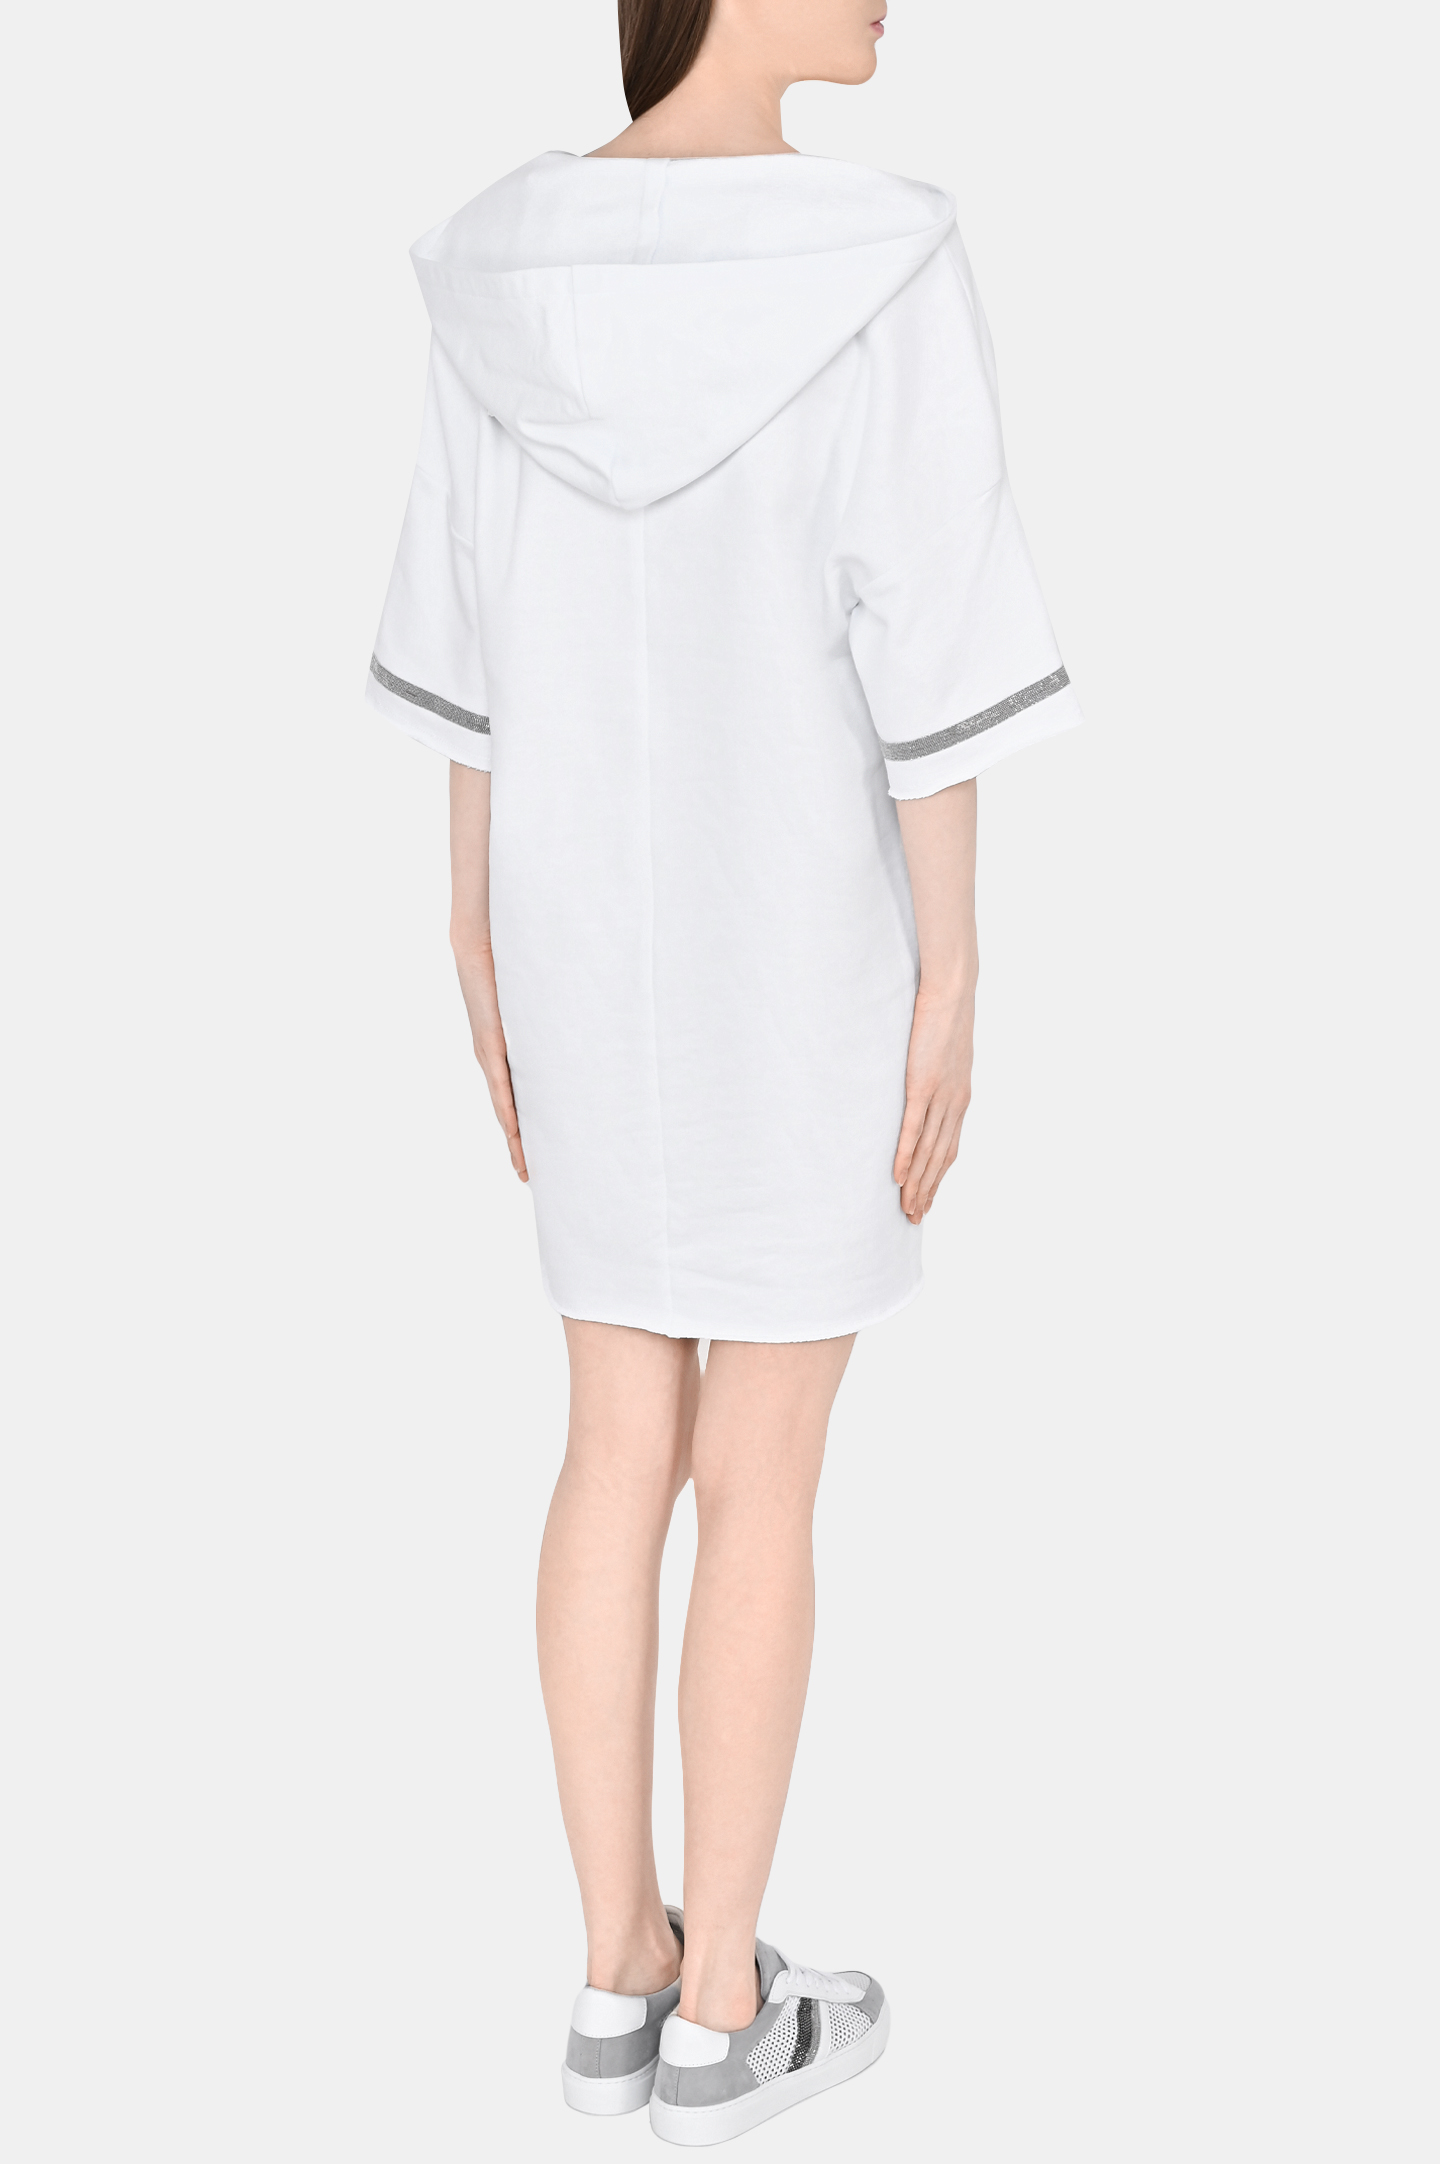 Платье FABIANA FILIPPI ABD273W179H359, цвет: Белый, Женский